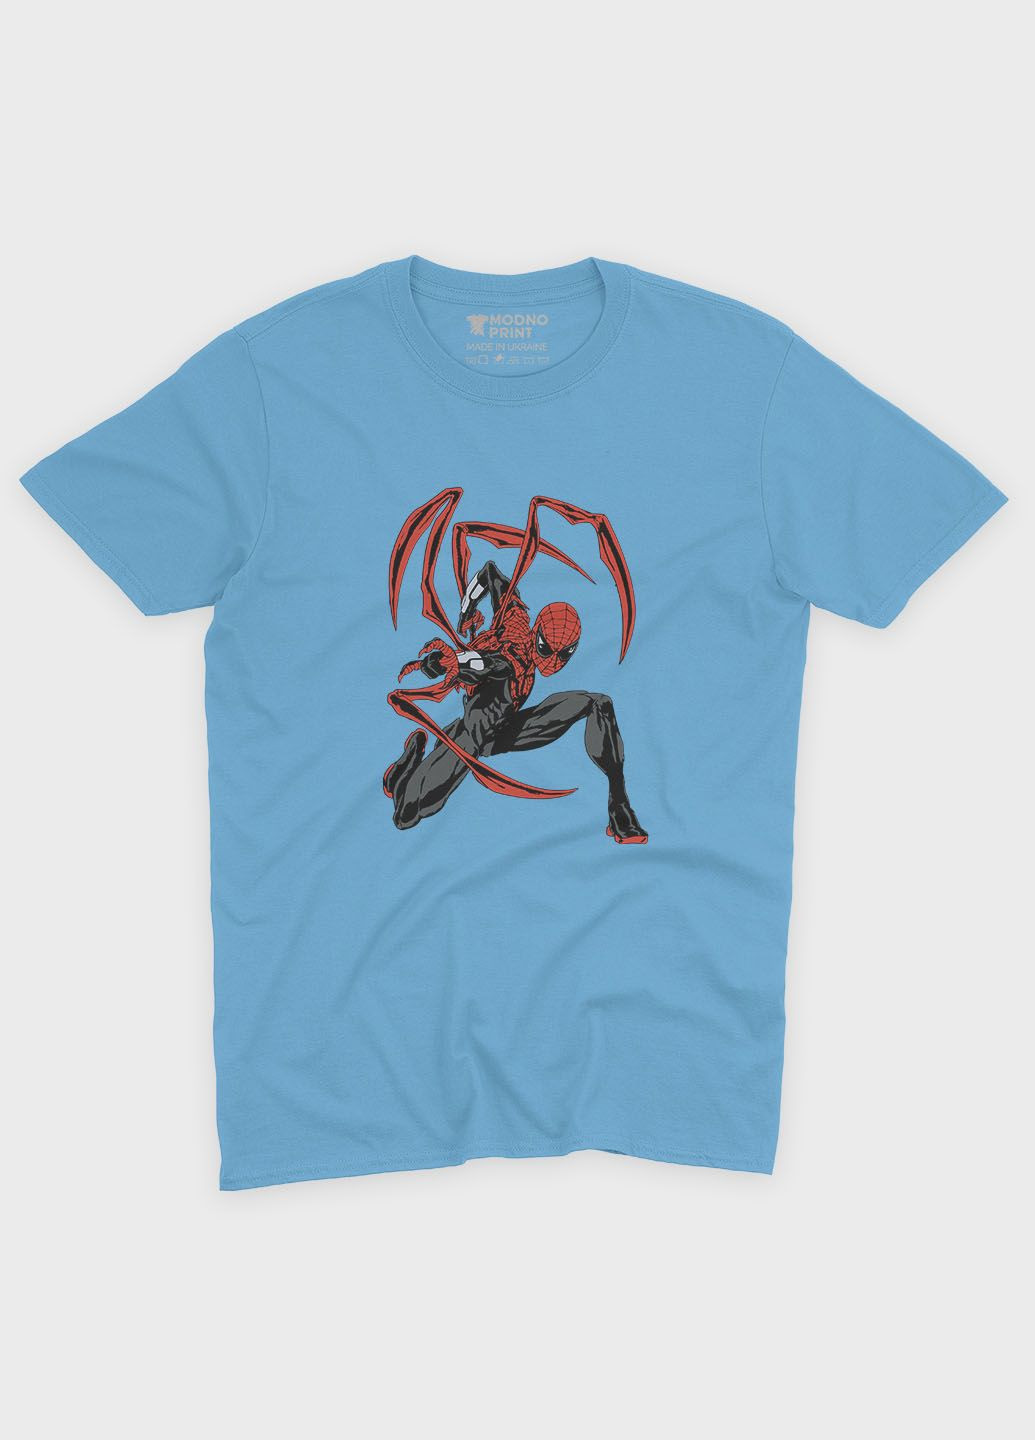 Голубая демисезонная футболка для мальчика с принтом супергероя - человек-паук (ts001-1-lbl-006-014-115-b) Modno